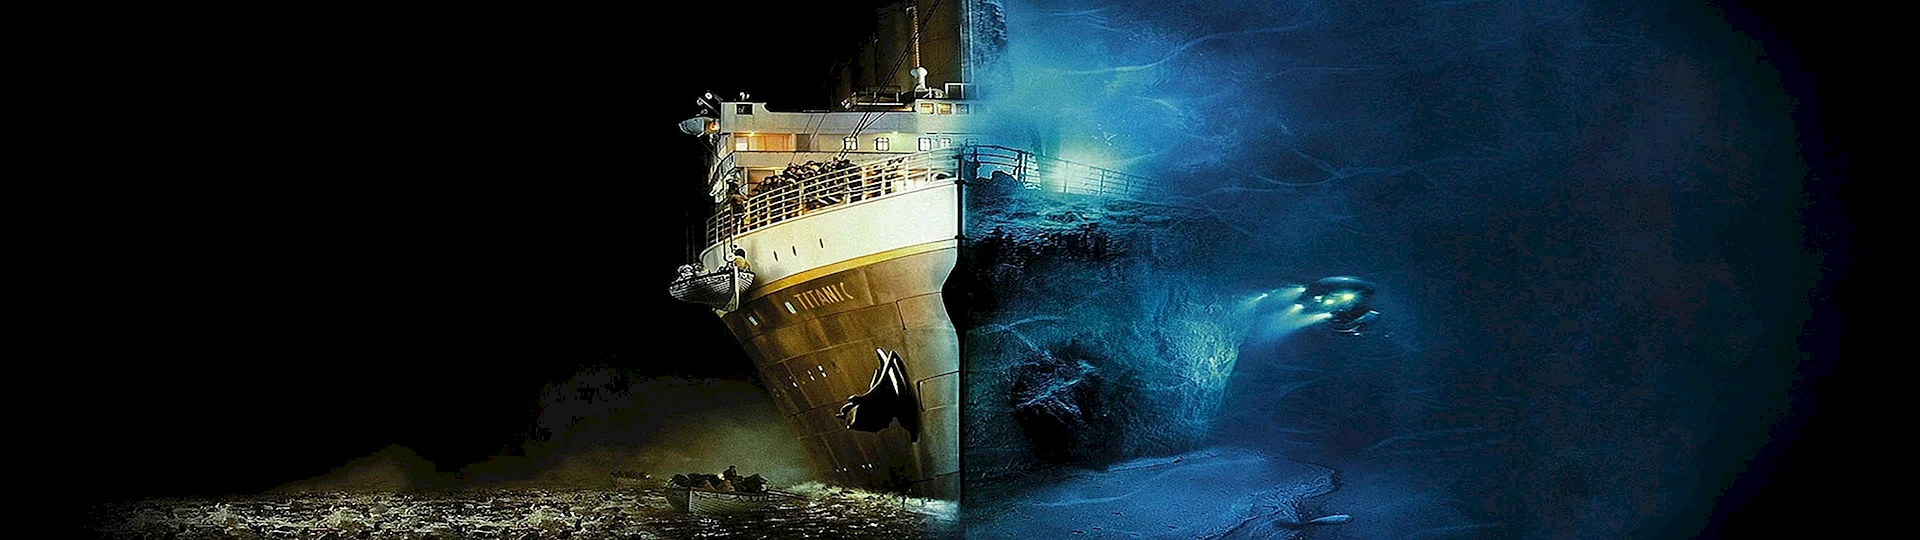 Титаник корабль крушение